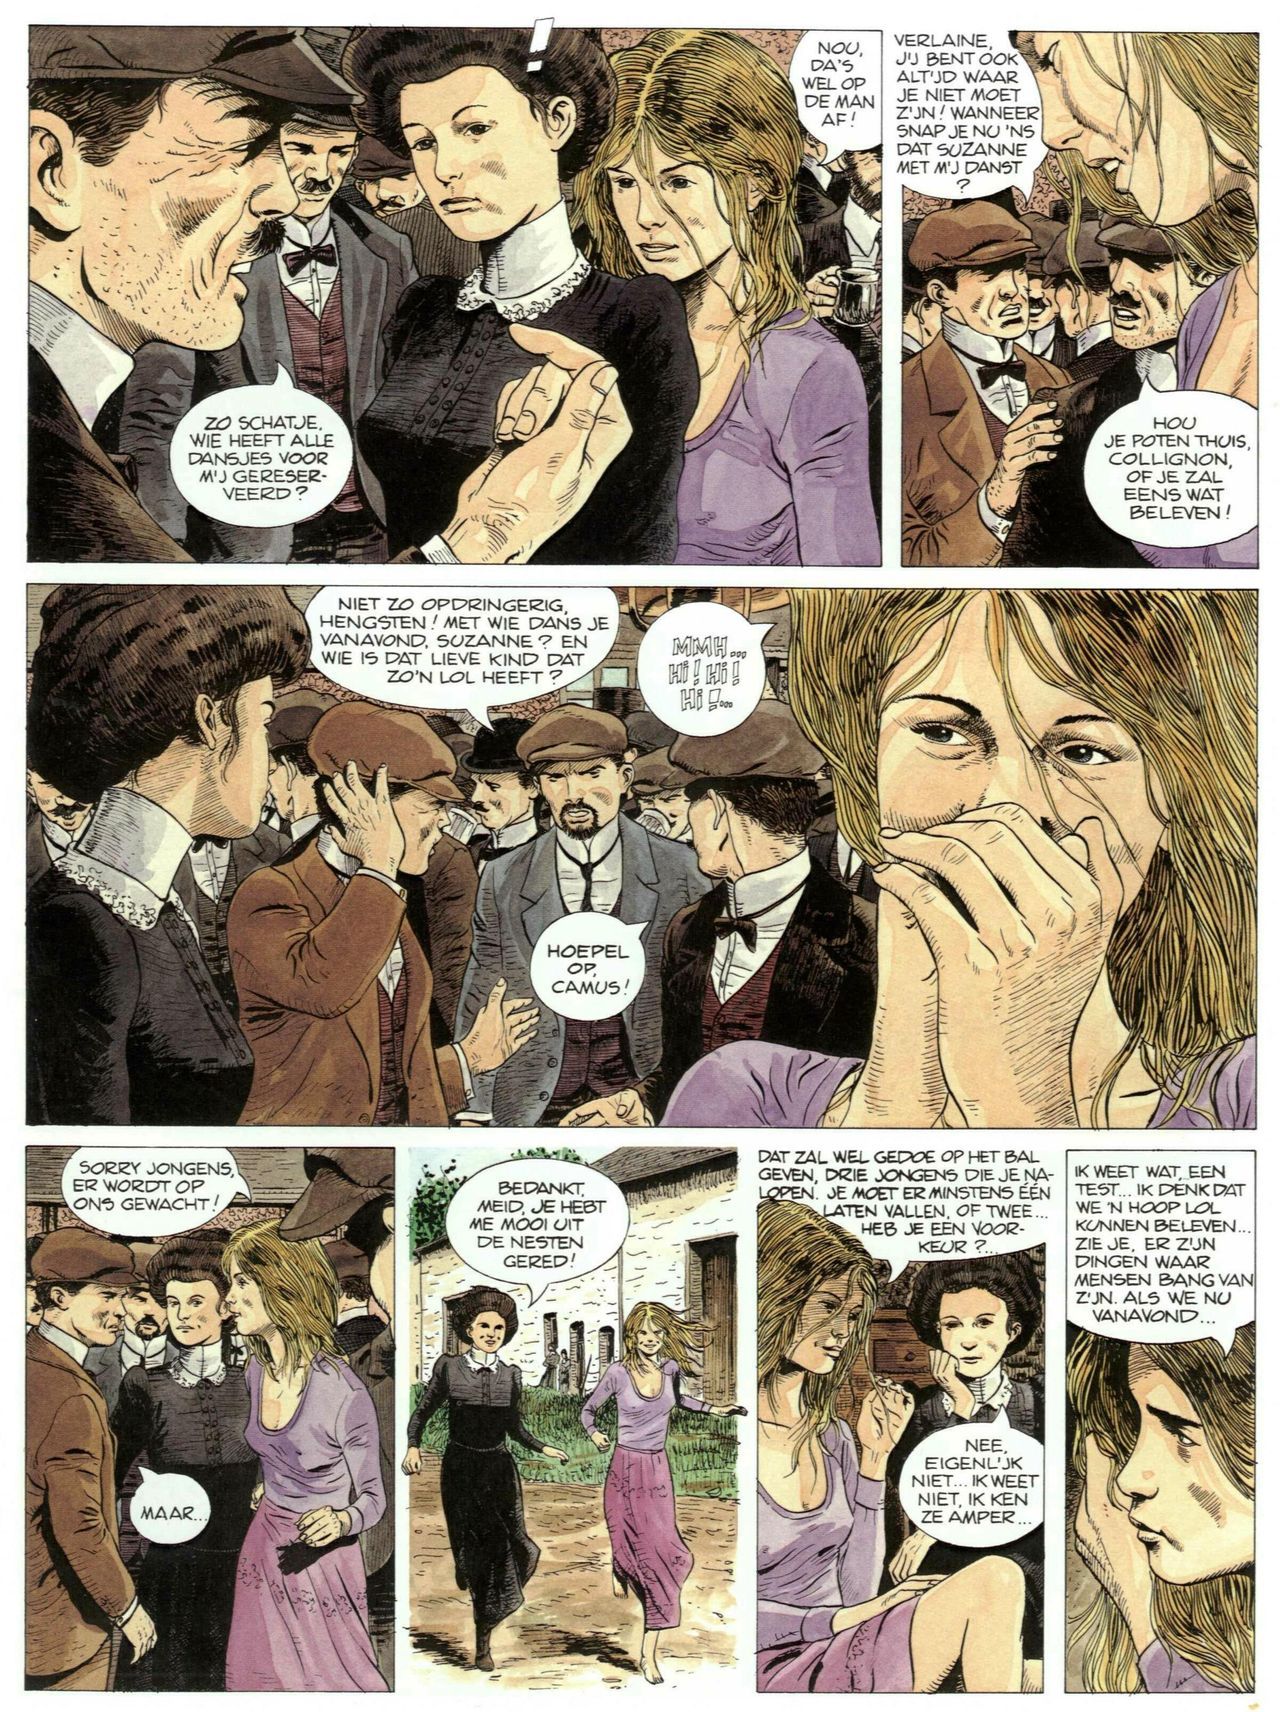 Bosliefje - 01 - Julien (Dutch) Franstalige strips die op deze site staan, hier is de Nederlandse uitgave! 41